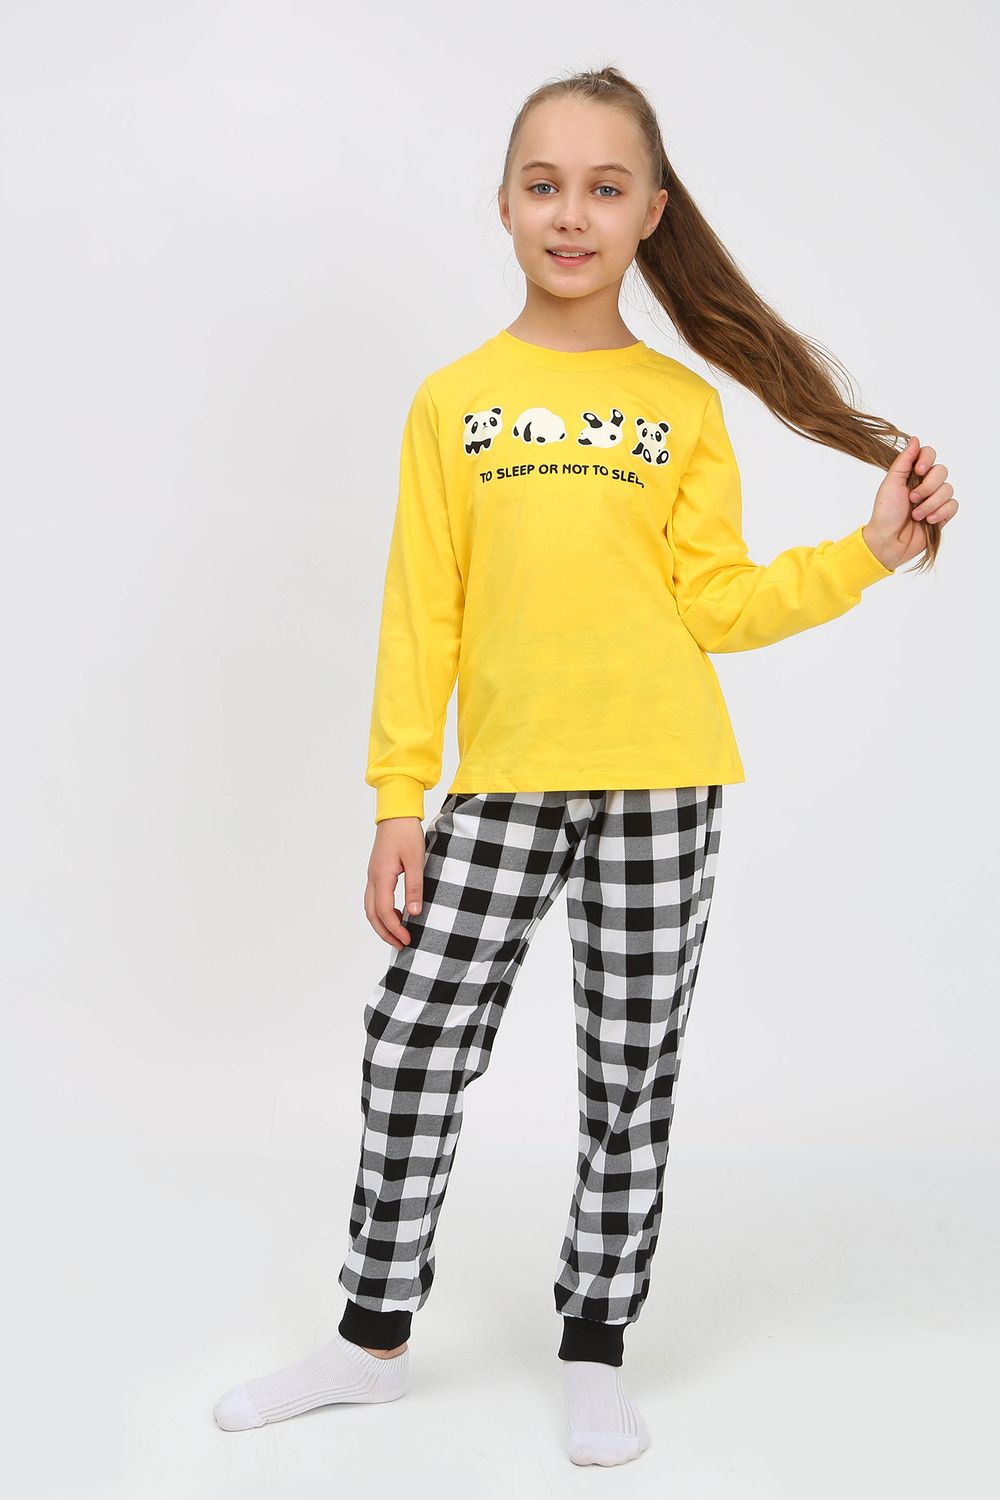 Пижама 91236 детская (джемпер, брюки) - желтый/черная клетка